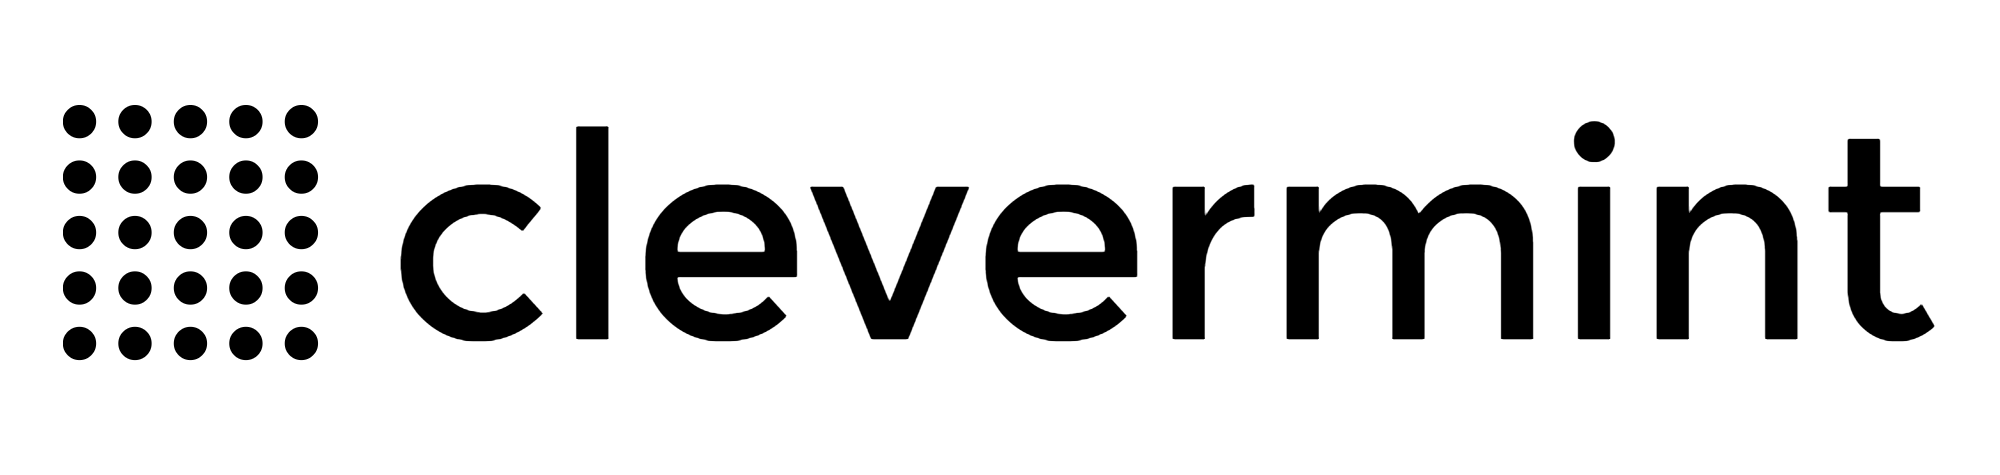 splet99 logo